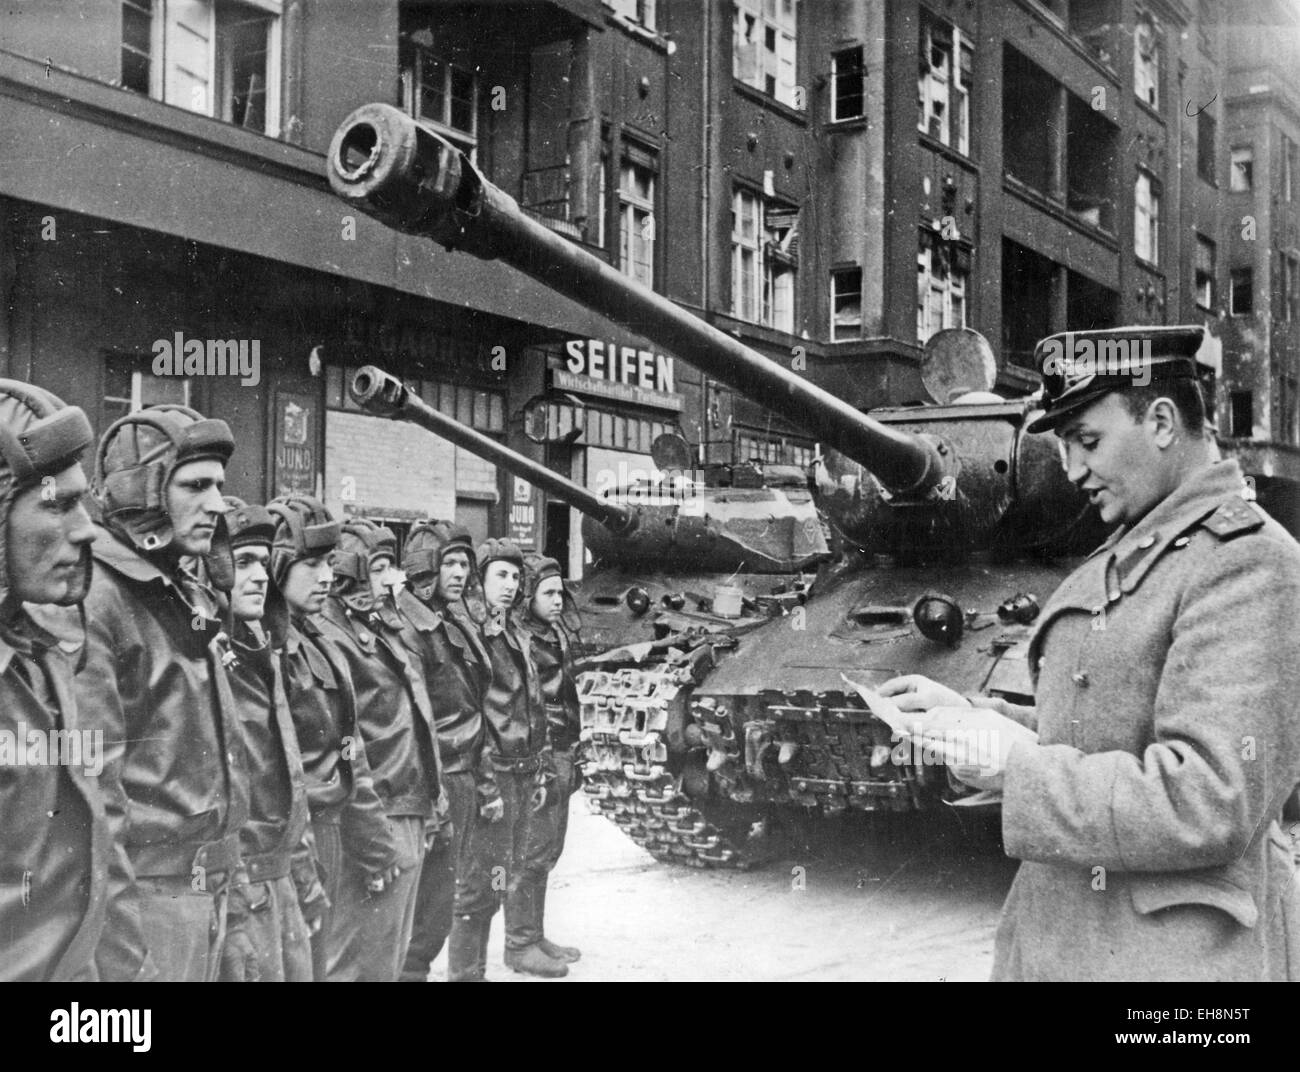 Dans l'armée soviétique HOHENZOLLERNSTRASSE, Berlin. Commandant soviétique donne des ordres à son unité en avril 1945, à côté de leurs chars IS-3 Banque D'Images